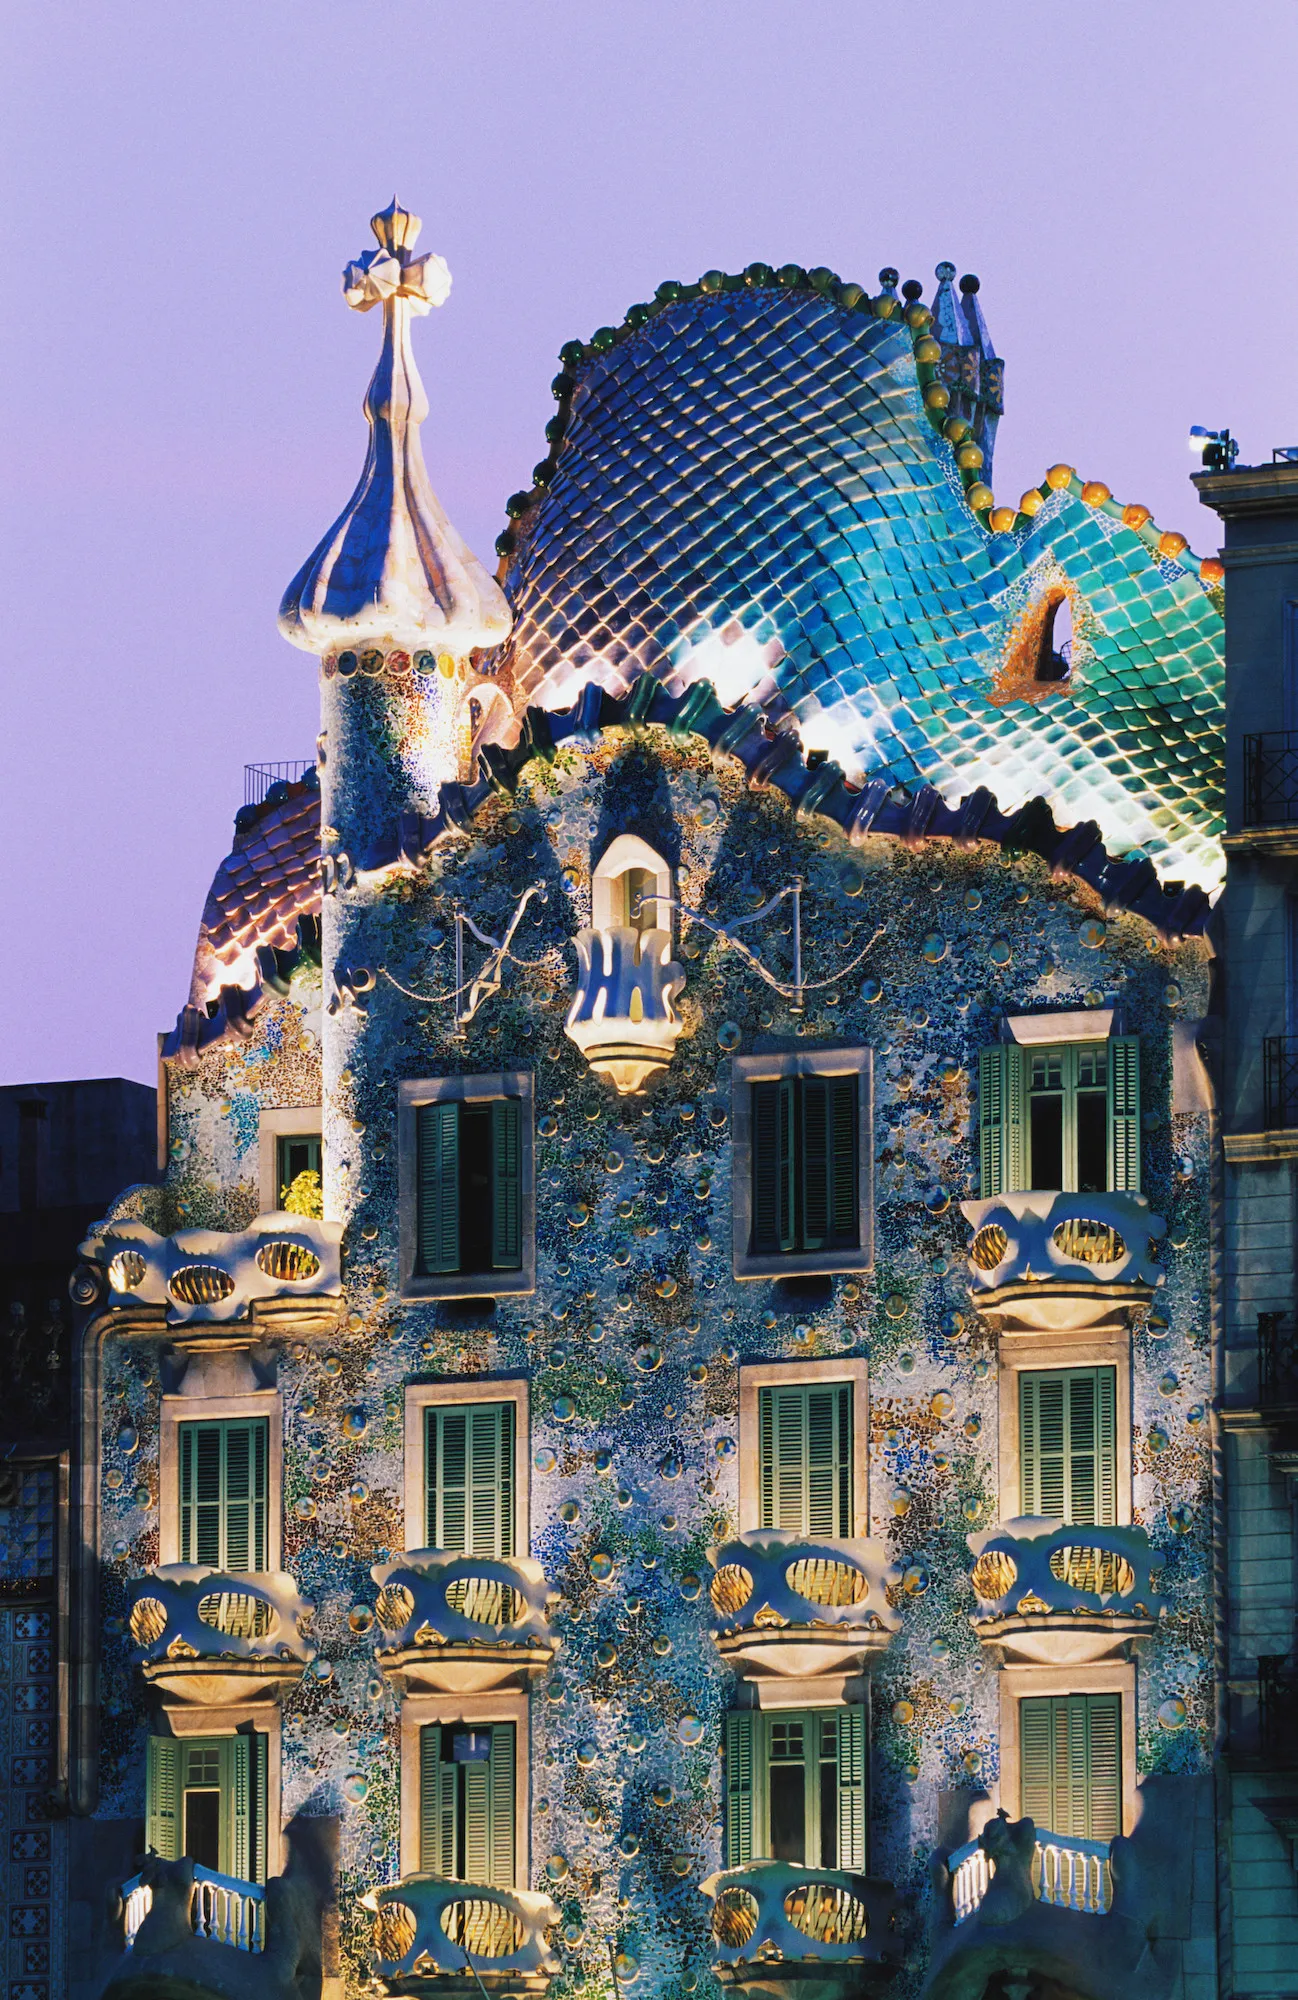 Casa Batlló, Barcelona, ​​Tây Ban Nha (được thiết kế bởi Antoni Gaudí, 1904) Được xây dựng lần đầu vào năm 1877,  Casa Batlló được kiến ​​trúc sư người Tây Ban Nha  Antoni Gaudí thiết kế lại vào năm 1904 —mặc dù Công viên Güell và La Sagrada Familia nổi tiếng của ông thường làm lu mờ ngôi nhà nhỏ hơn. Tuy nhiên, rõ ràng là tại sao nó được coi là một trong những kiệt tác theo chủ nghĩa hiện đại của Gaudí: Với mái nhà uốn lượn lấy cảm hứng từ cơ thể rồng, những bức tranh khảm lấp lánh và cửa sổ kính màu, Casa Batlló không có gì là viển vông. Không còn là một tòa nhà dân cư, Casa Batlló hiện là Di sản Thế giới được UNESCO công nhận và là địa điểm không thể bỏ qua của Barcelona.